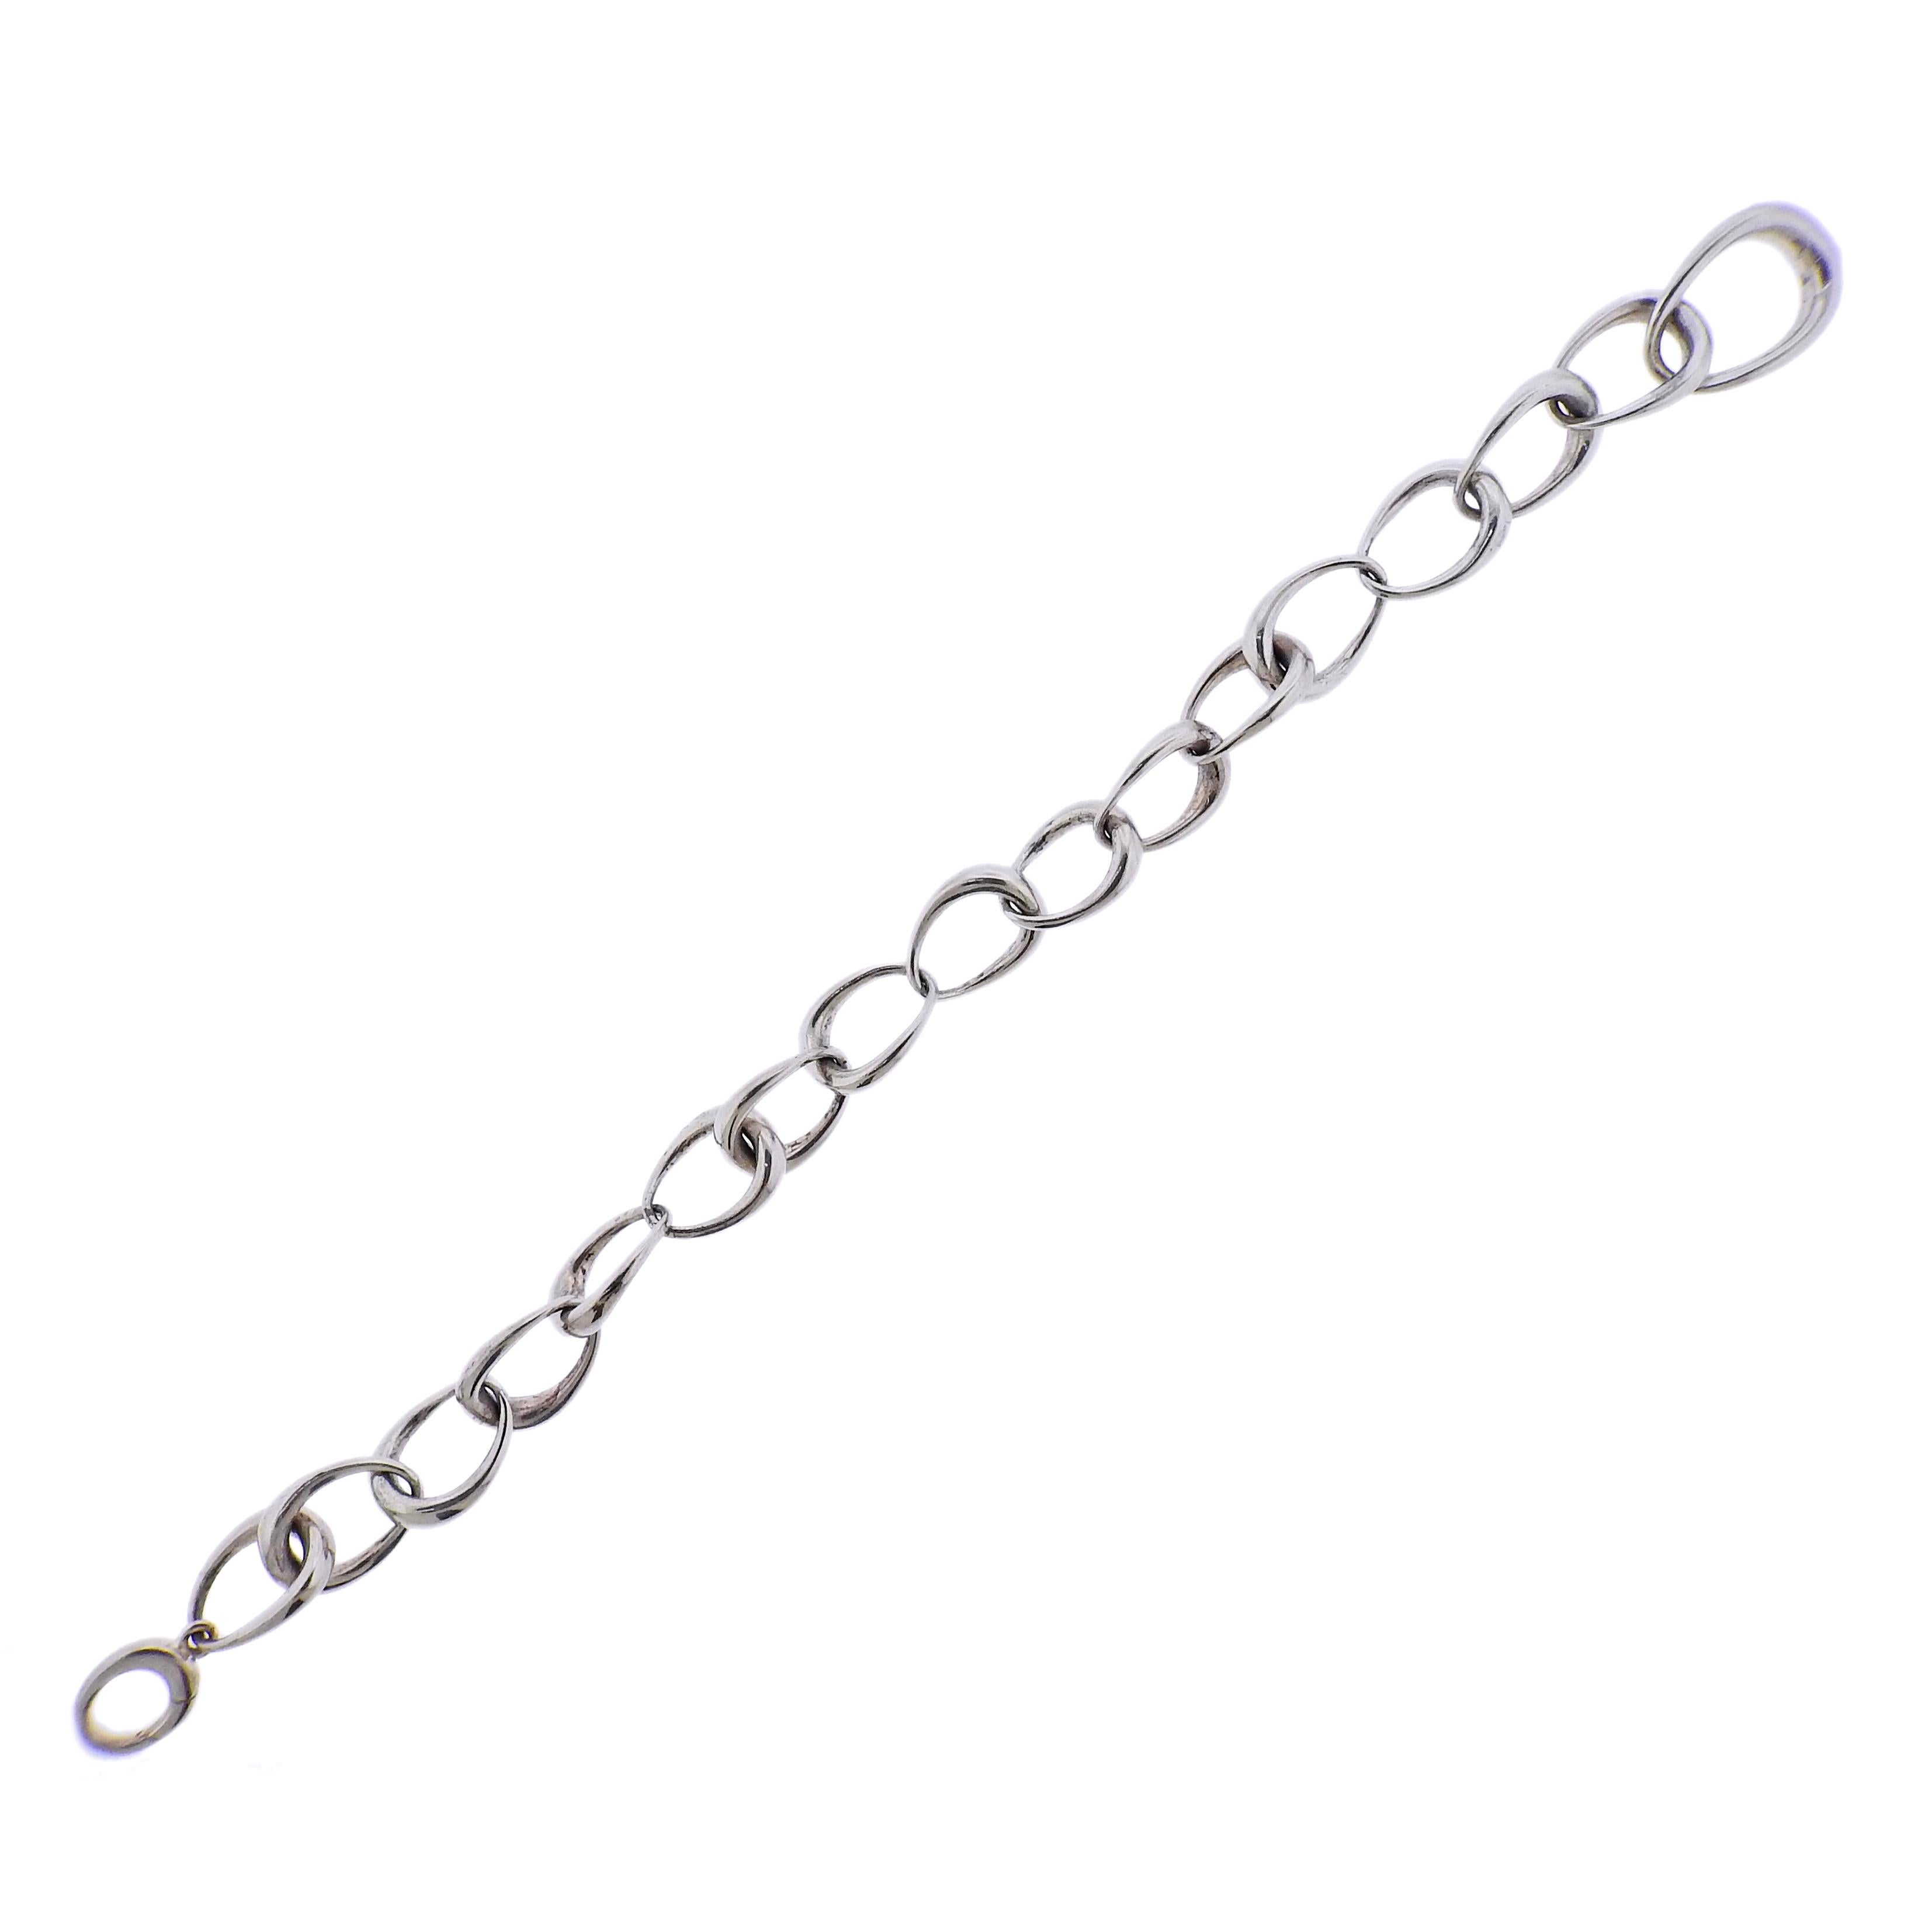 Brand new Georg Jensen sterling silver Offspring link bracelet. Measurements are: 7 1/2